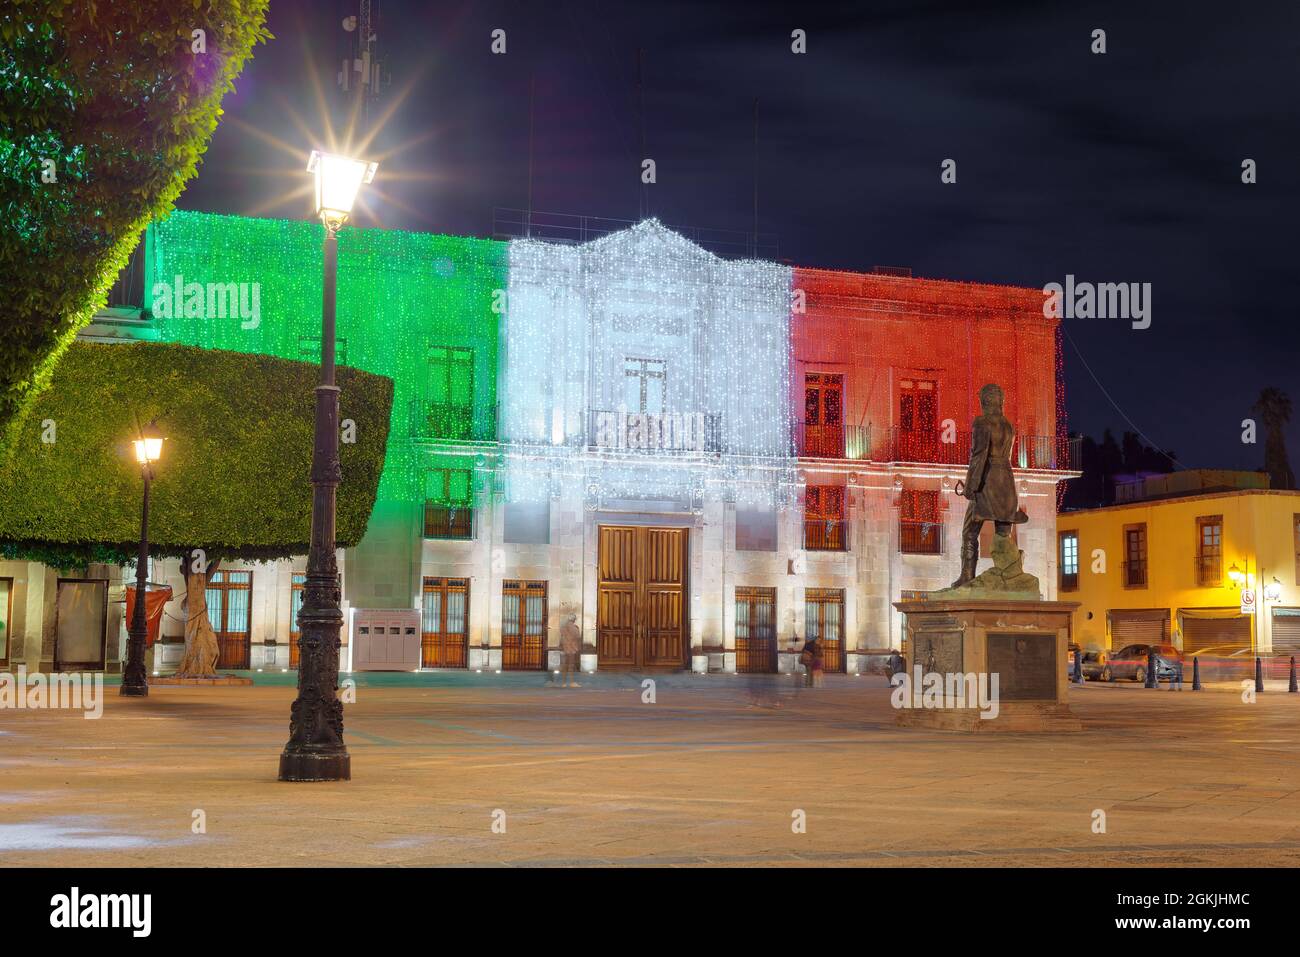 Queretaro, Queretaro, Mexique septembre 12 2021 immeuble illuminé de lumières nationales vertes, blanches et rouges, dans le jardin guerrero, nuit dans le Banque D'Images